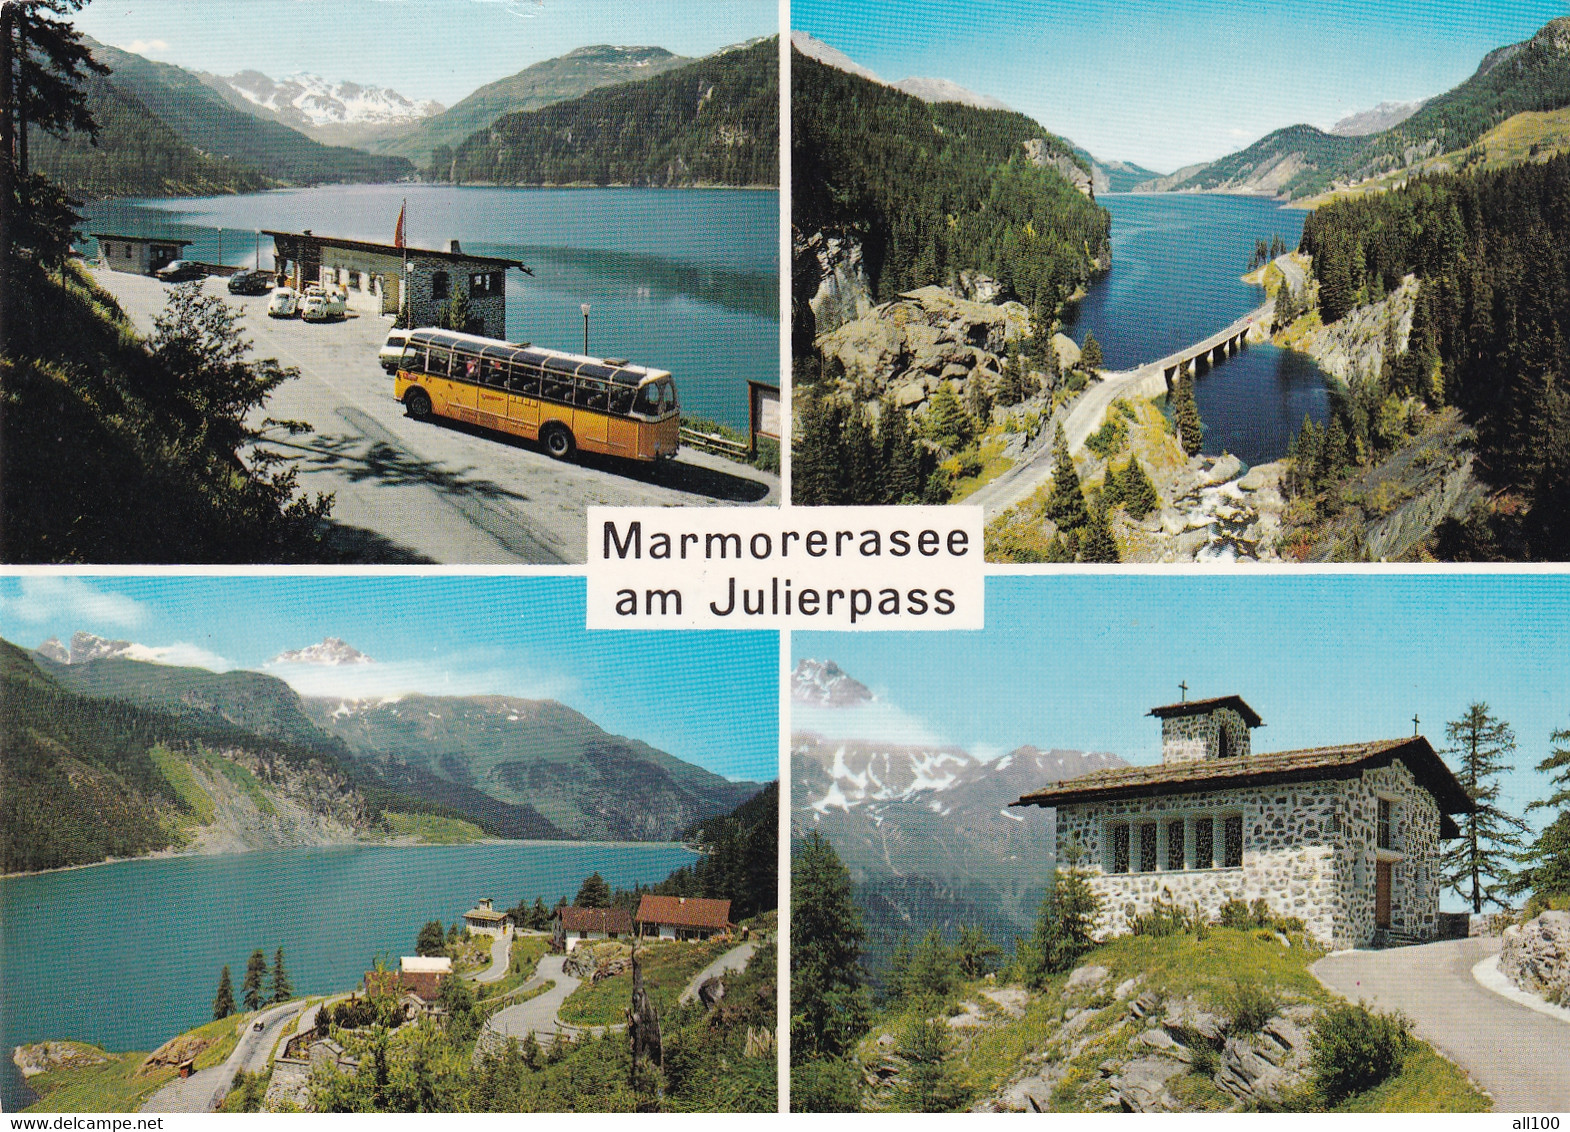 A17728 - MARMORERASEE AM JULIERPASS, RESTAURANT MARMORERASEE, MARMORERA DORF, KIRCHLEIN, POST CARD, USED, 1971 - Marmorera